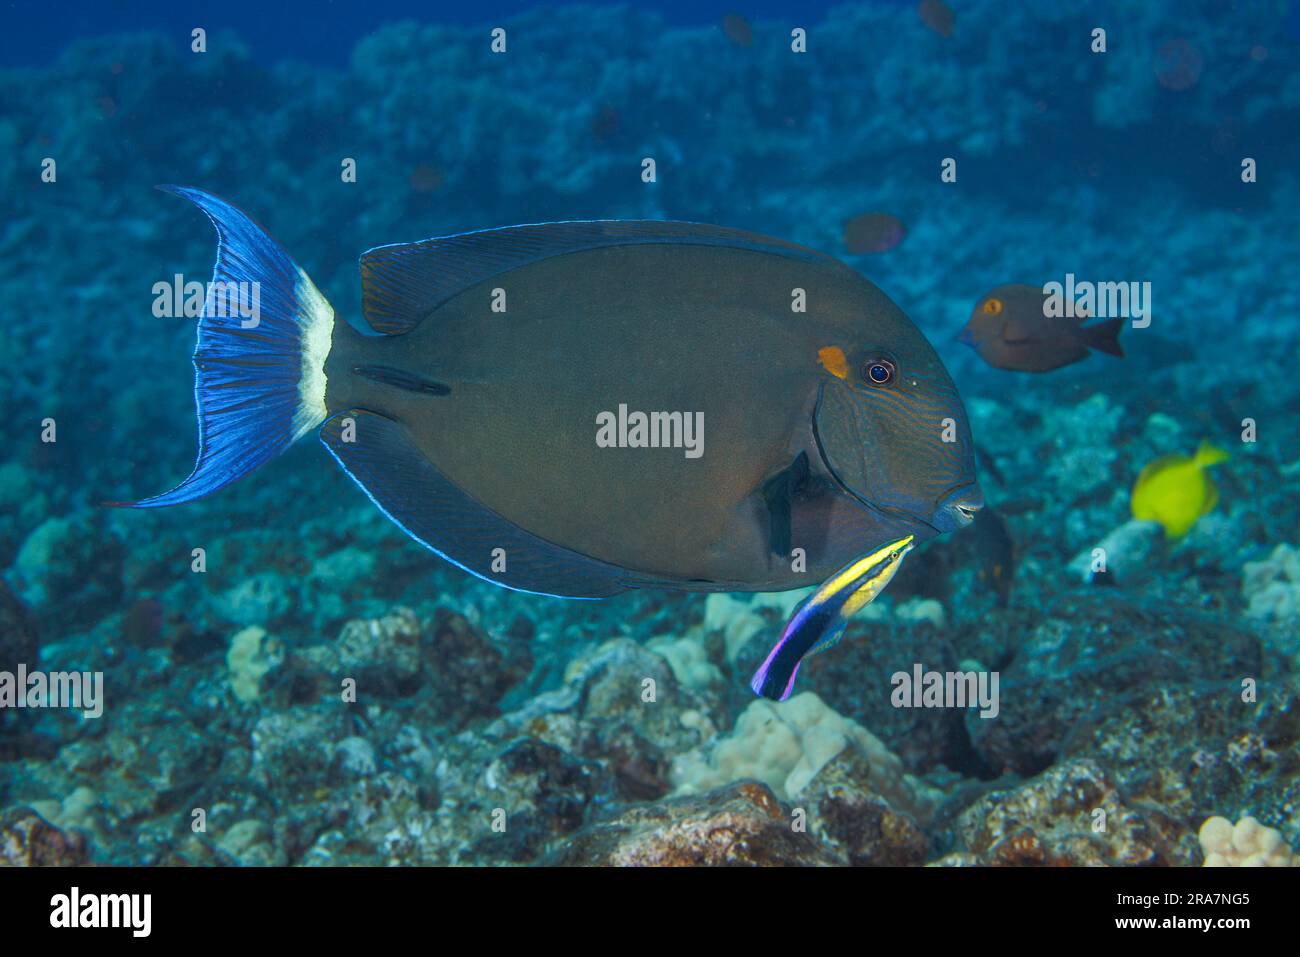 Il surgeonfish della coda ad anello, Acanthurus blochii, si trova spesso in grandi scuole, Hawaii. Questo individuo viene esaminato dall'endemico hawaiano c Foto Stock